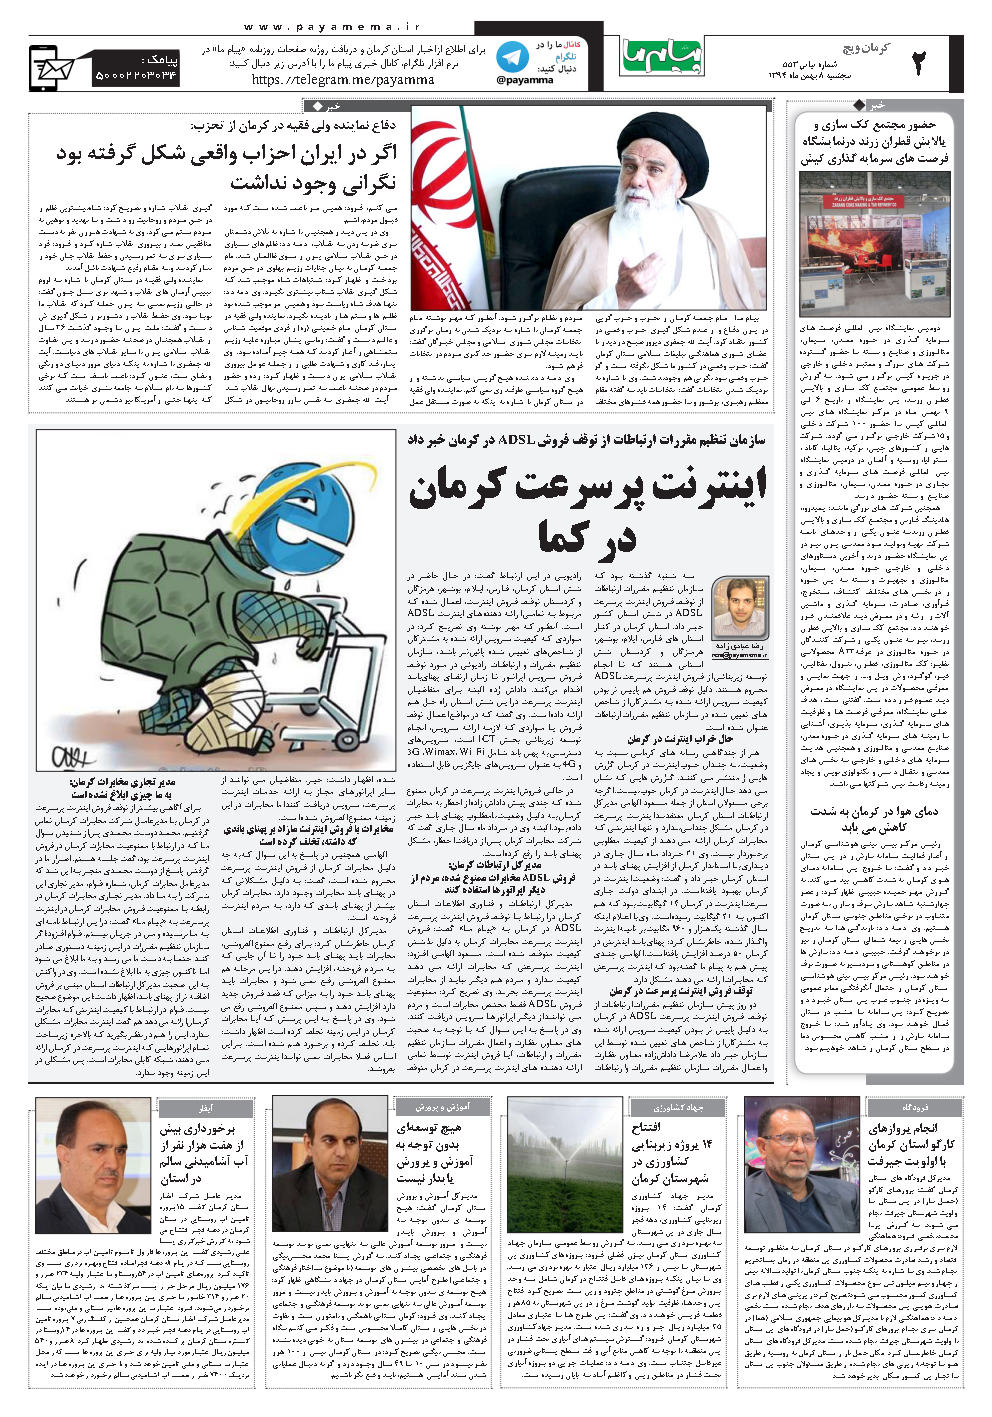 سازمان تنظیم مقررات ارتباطات از توقف فروش ADSL در کرمان خبر داد اینترنت پرسرعت کرمان در کما